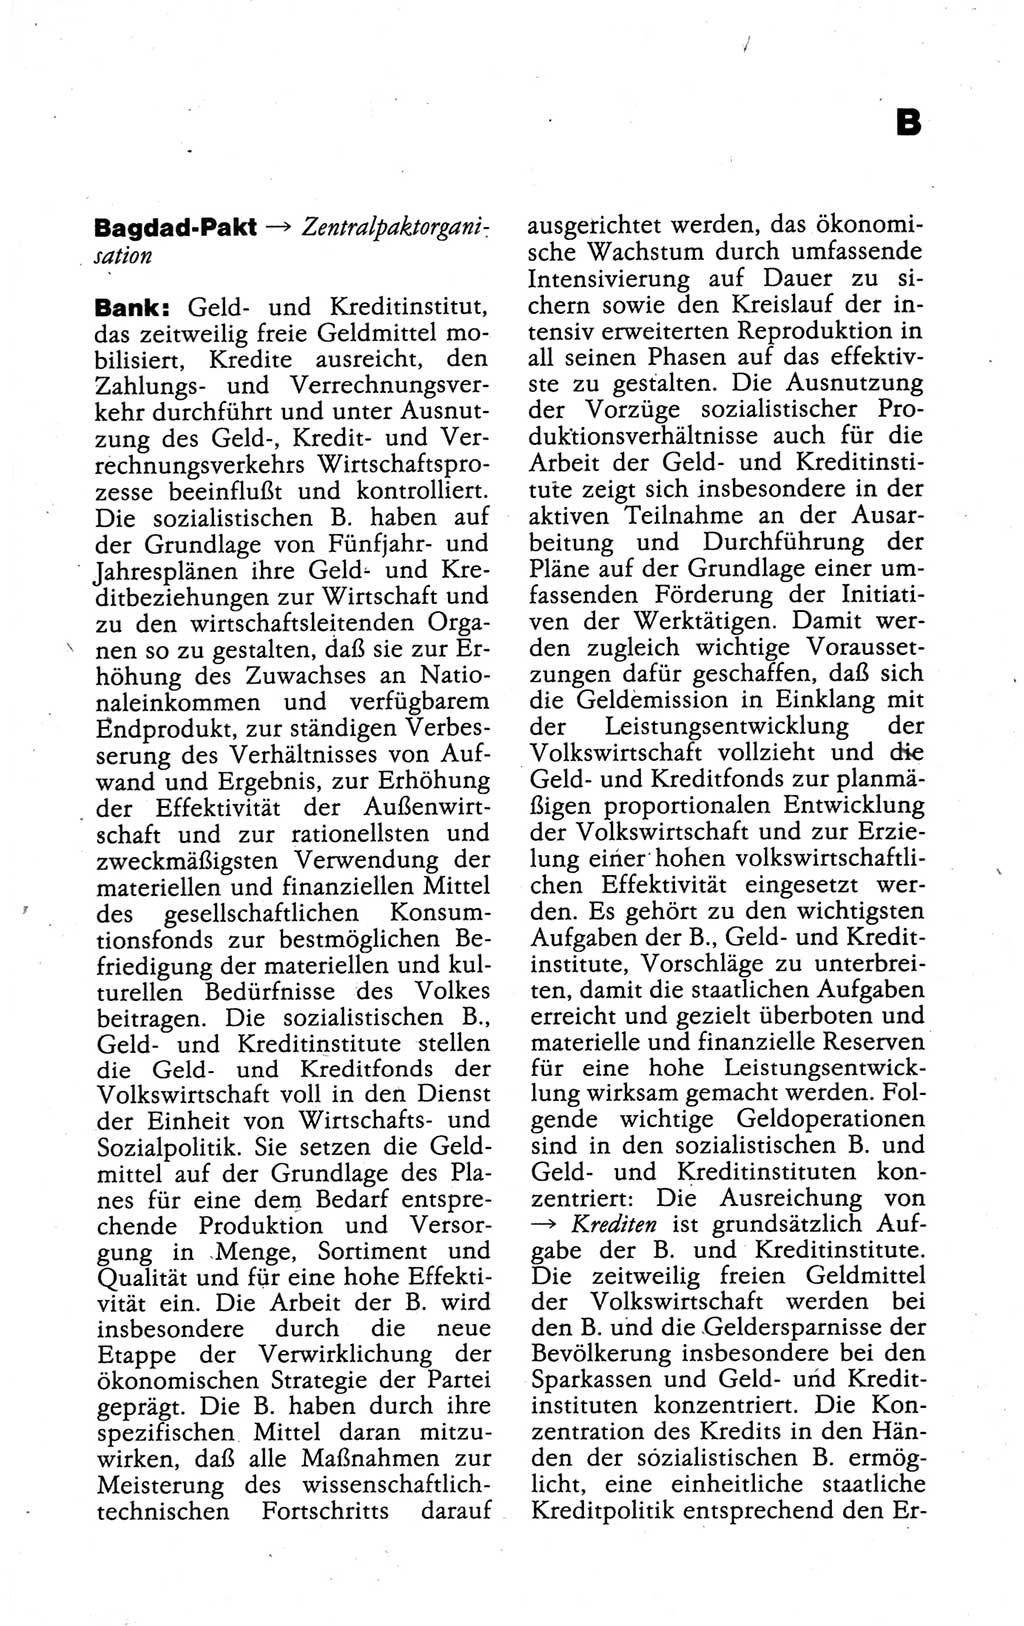 Kleines politisches Wörterbuch [Deutsche Demokratische Republik (DDR)] 1988, Seite 117 (Kl. pol. Wb. DDR 1988, S. 117)